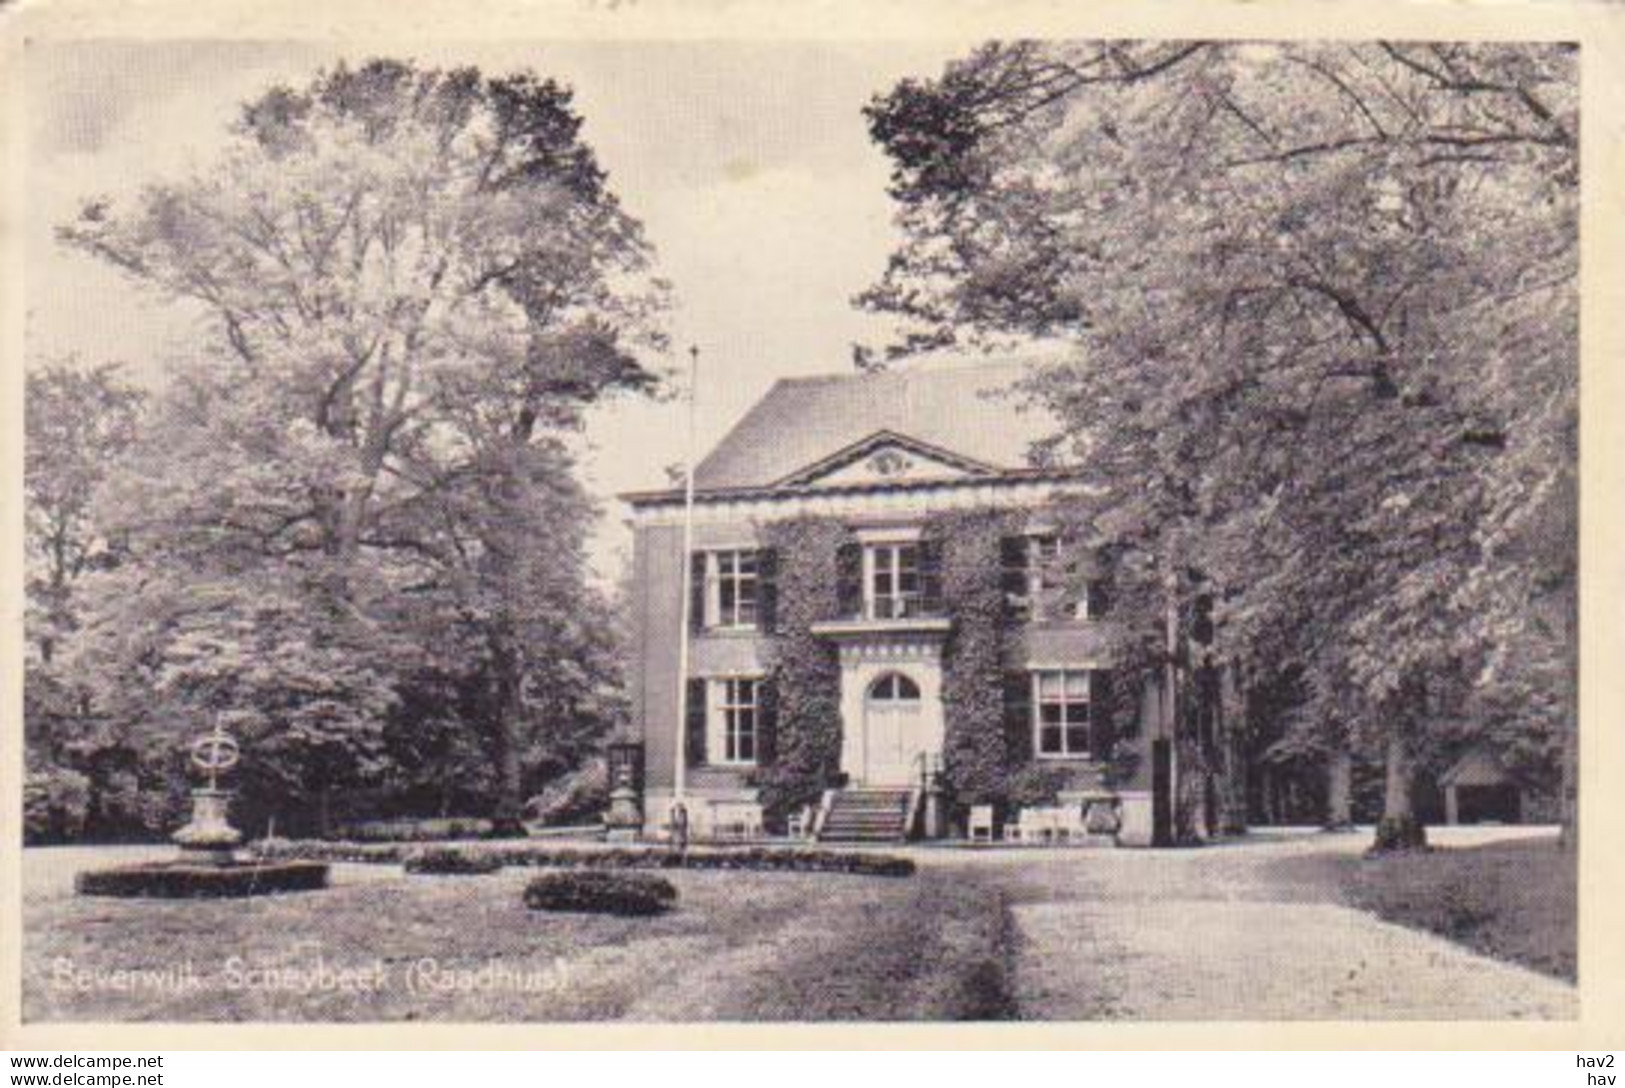 Beverwijk Scheybeek Raadhuis 1952 RY15841 - Beverwijk